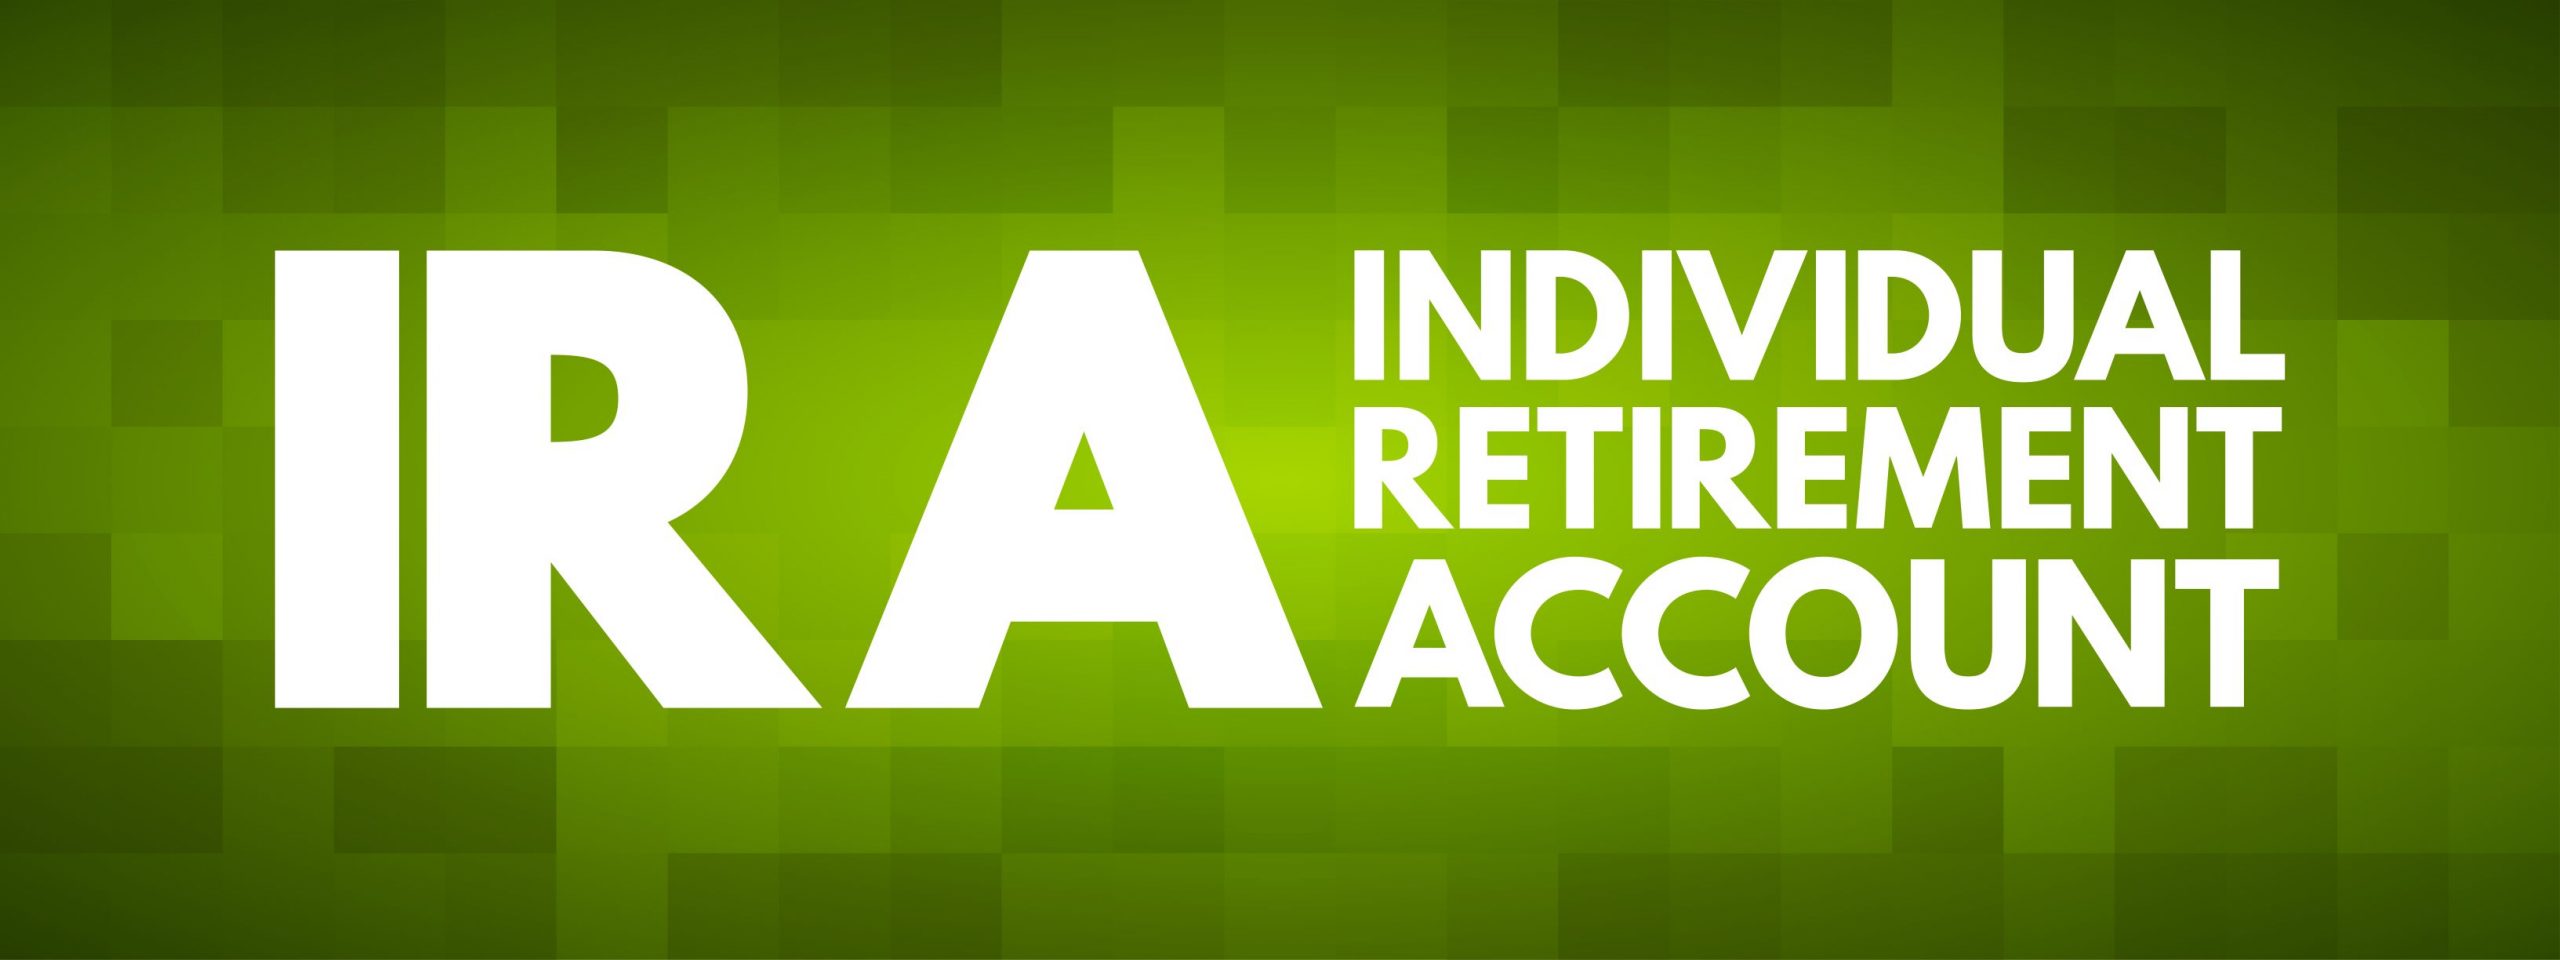 IRA Individual Retirement Account